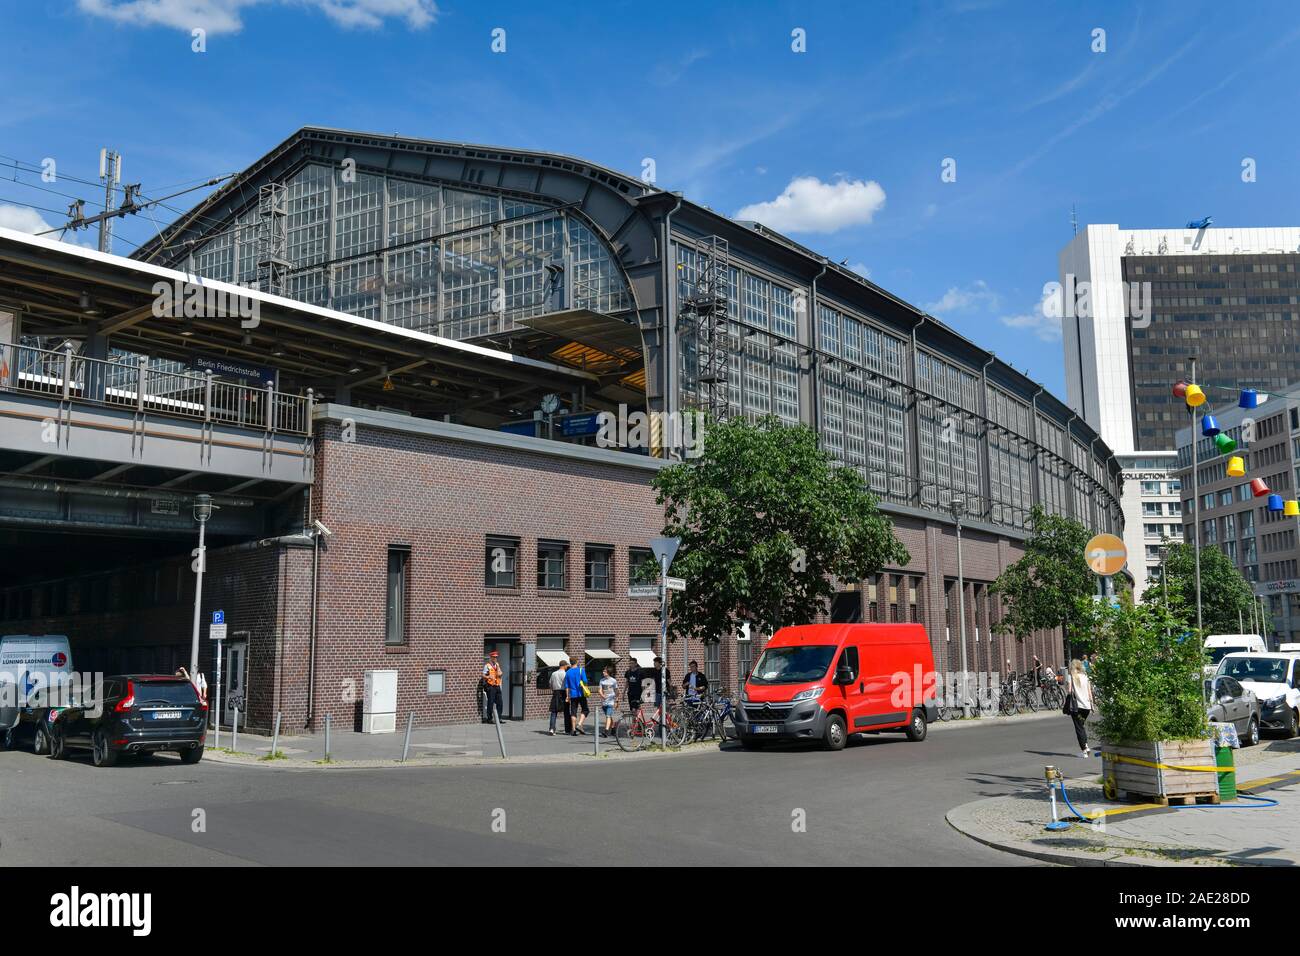 Bahnhof Friedrichstraße, Mitte, Berlin, Deutschland Banque D'Images